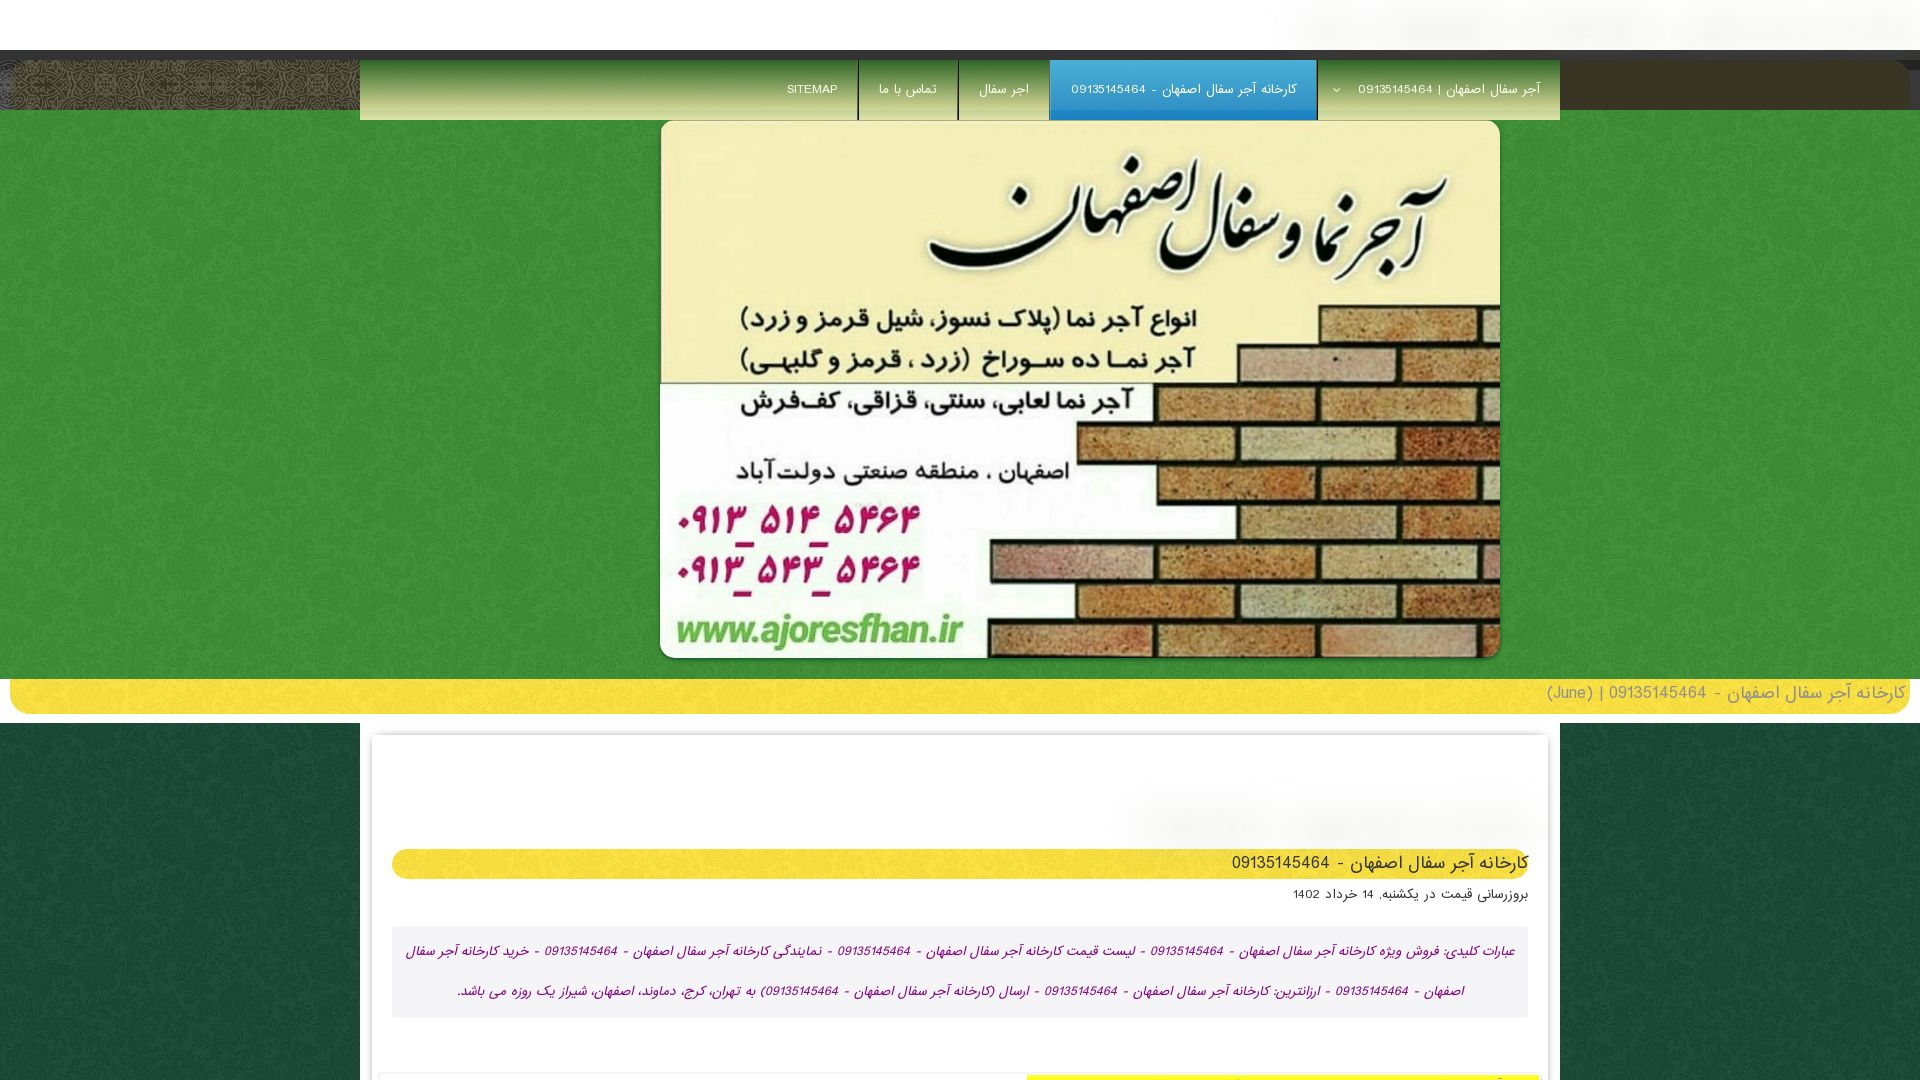 Estado web ajornamaesfahan.ir está   ONLINE